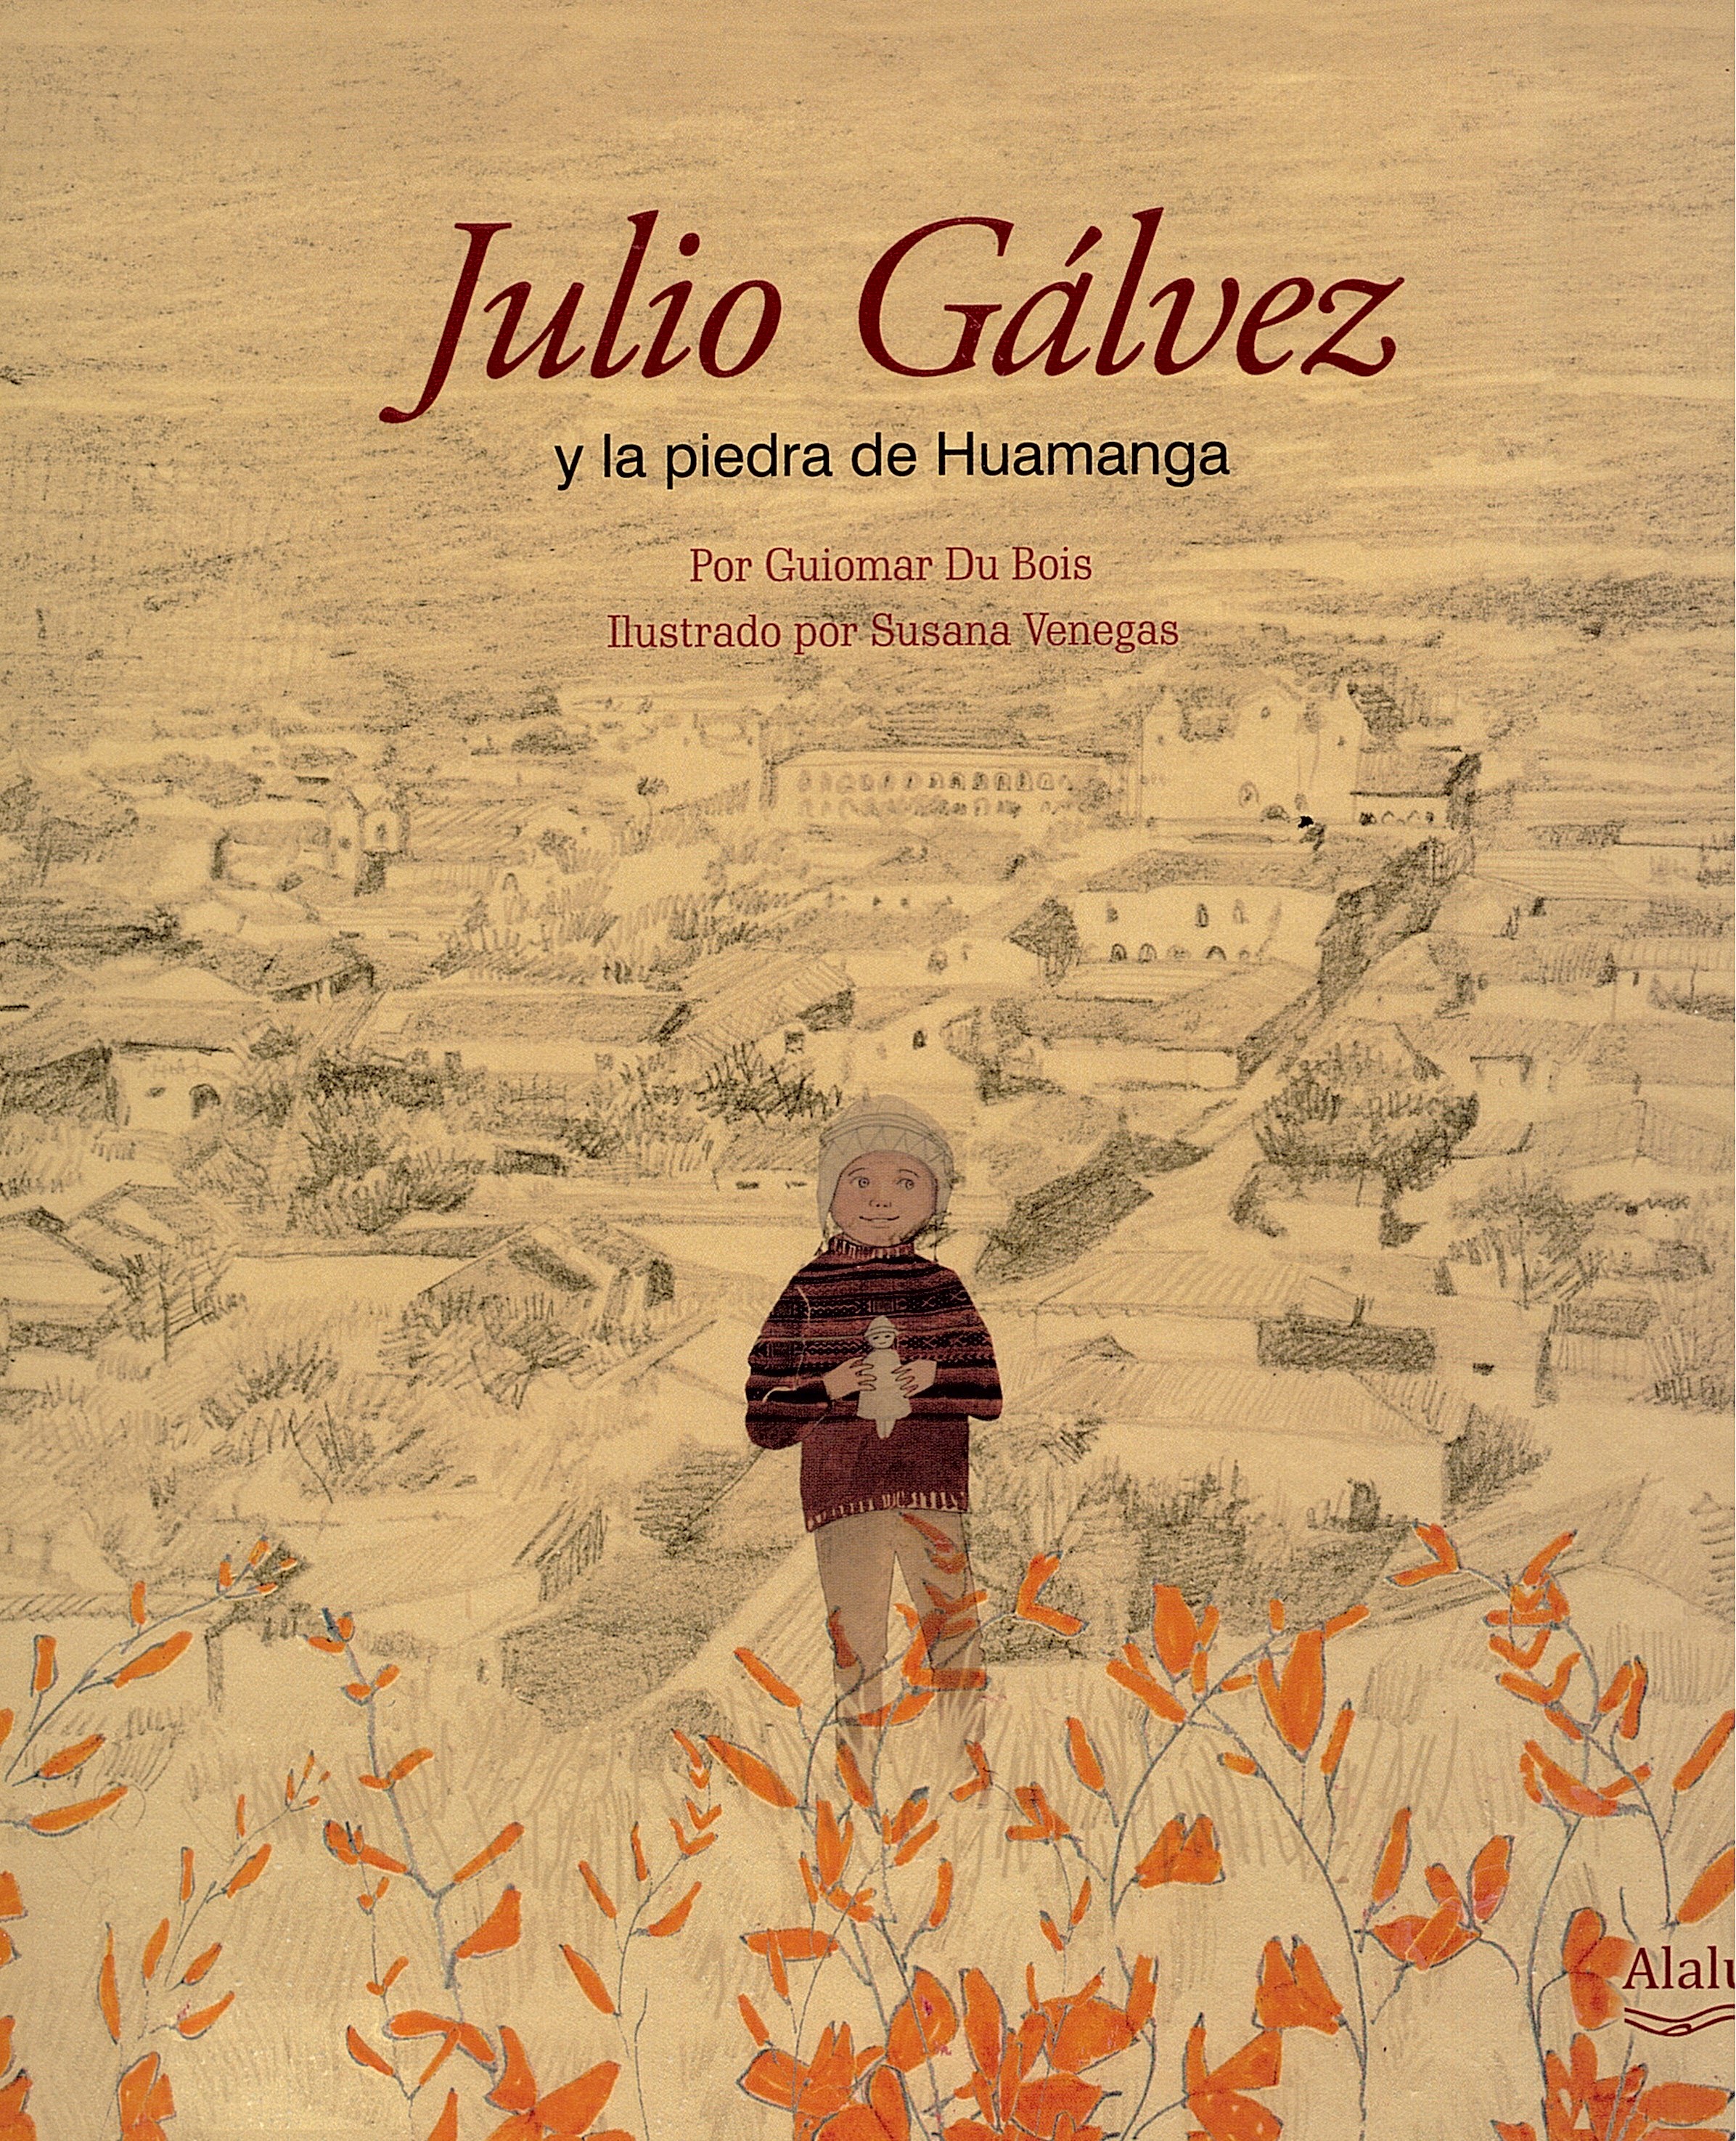 Julio Galvez